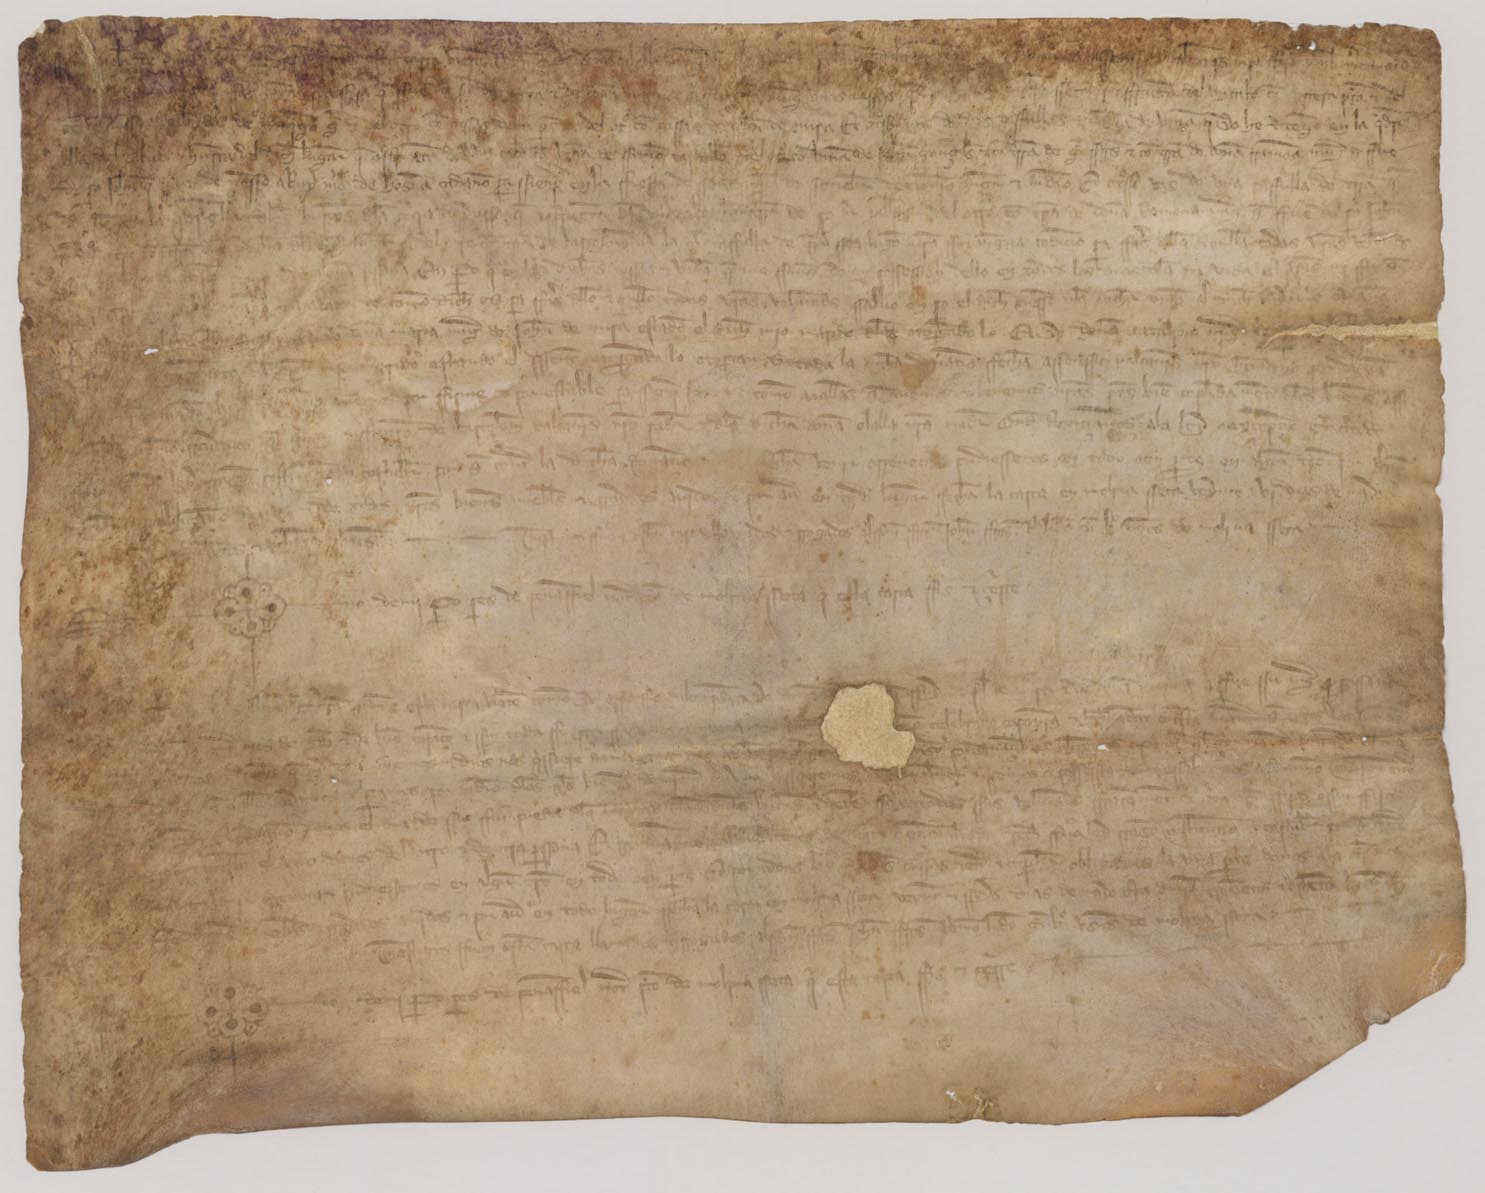 Carta de donación de doña Olalla, viuda de Bartolomé de Alcañiz, a favor de su hijo Asensio de unas casas y tierras en Molina Seca.